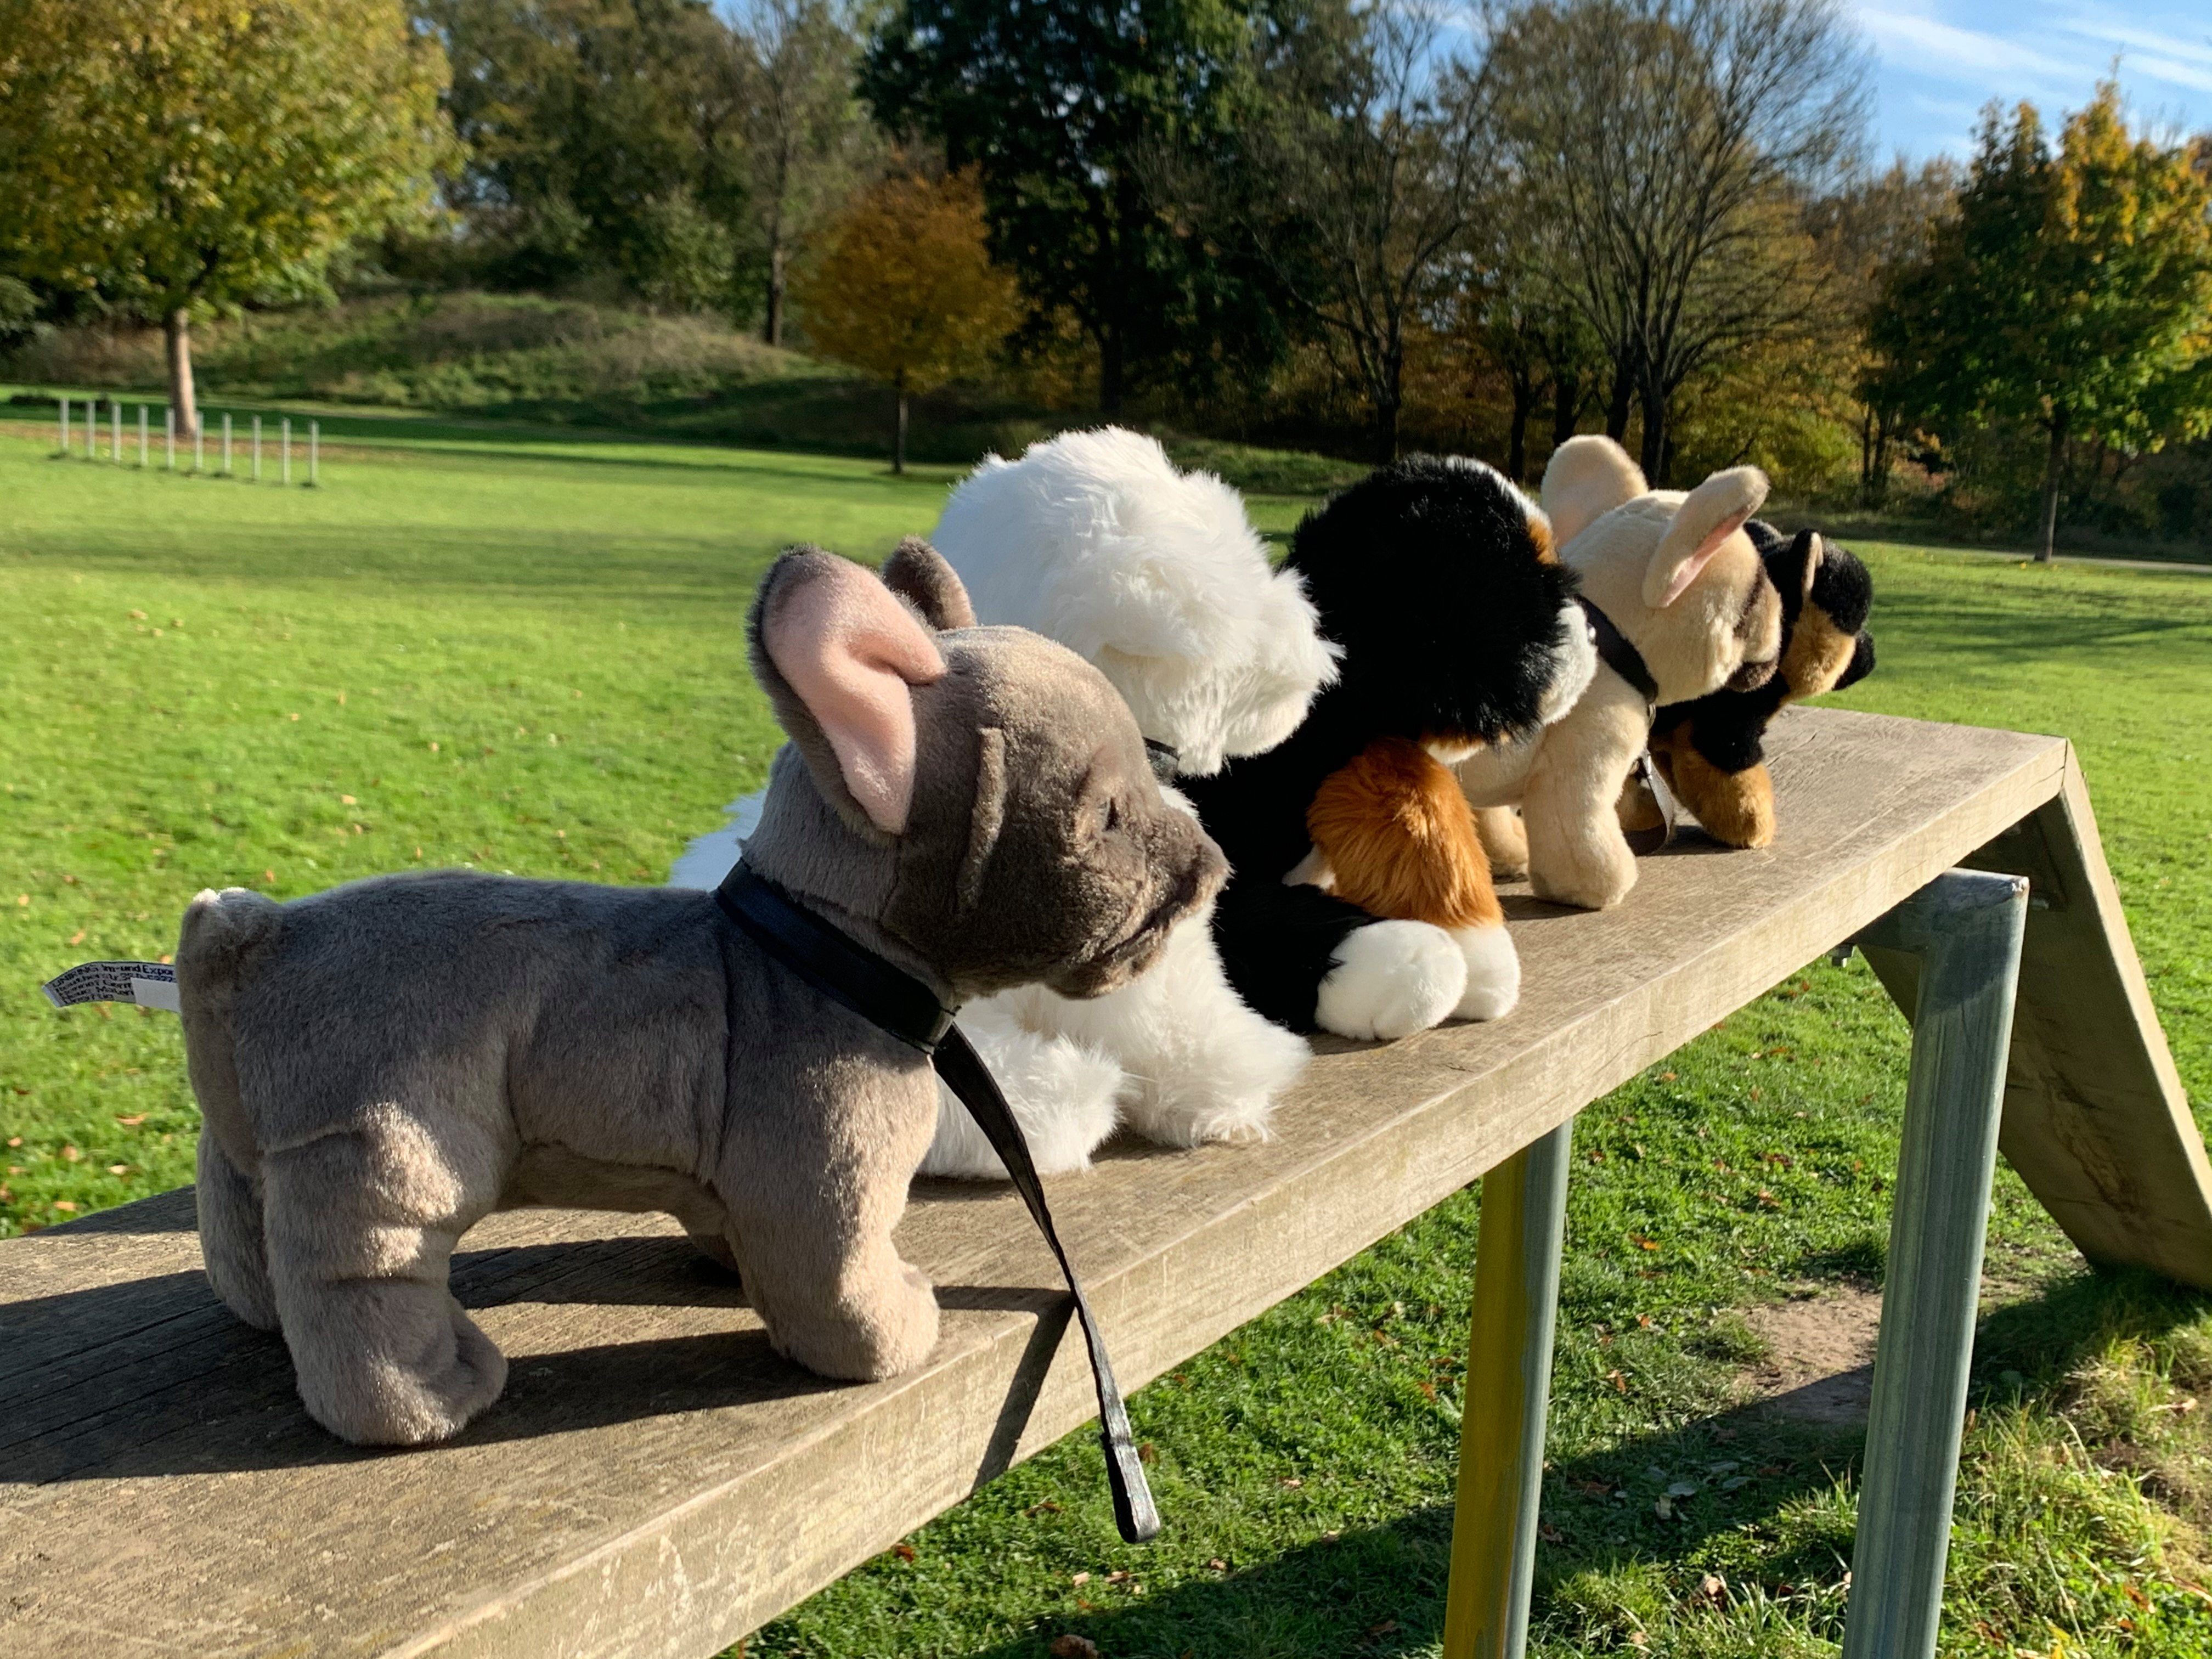 zu m/o Plüsch-Hund, Plüschtier, % Uni-Toys 27cm, recyceltes Bulldogge Kuscheltier beige, Leine, Französische 100 Füllmaterial